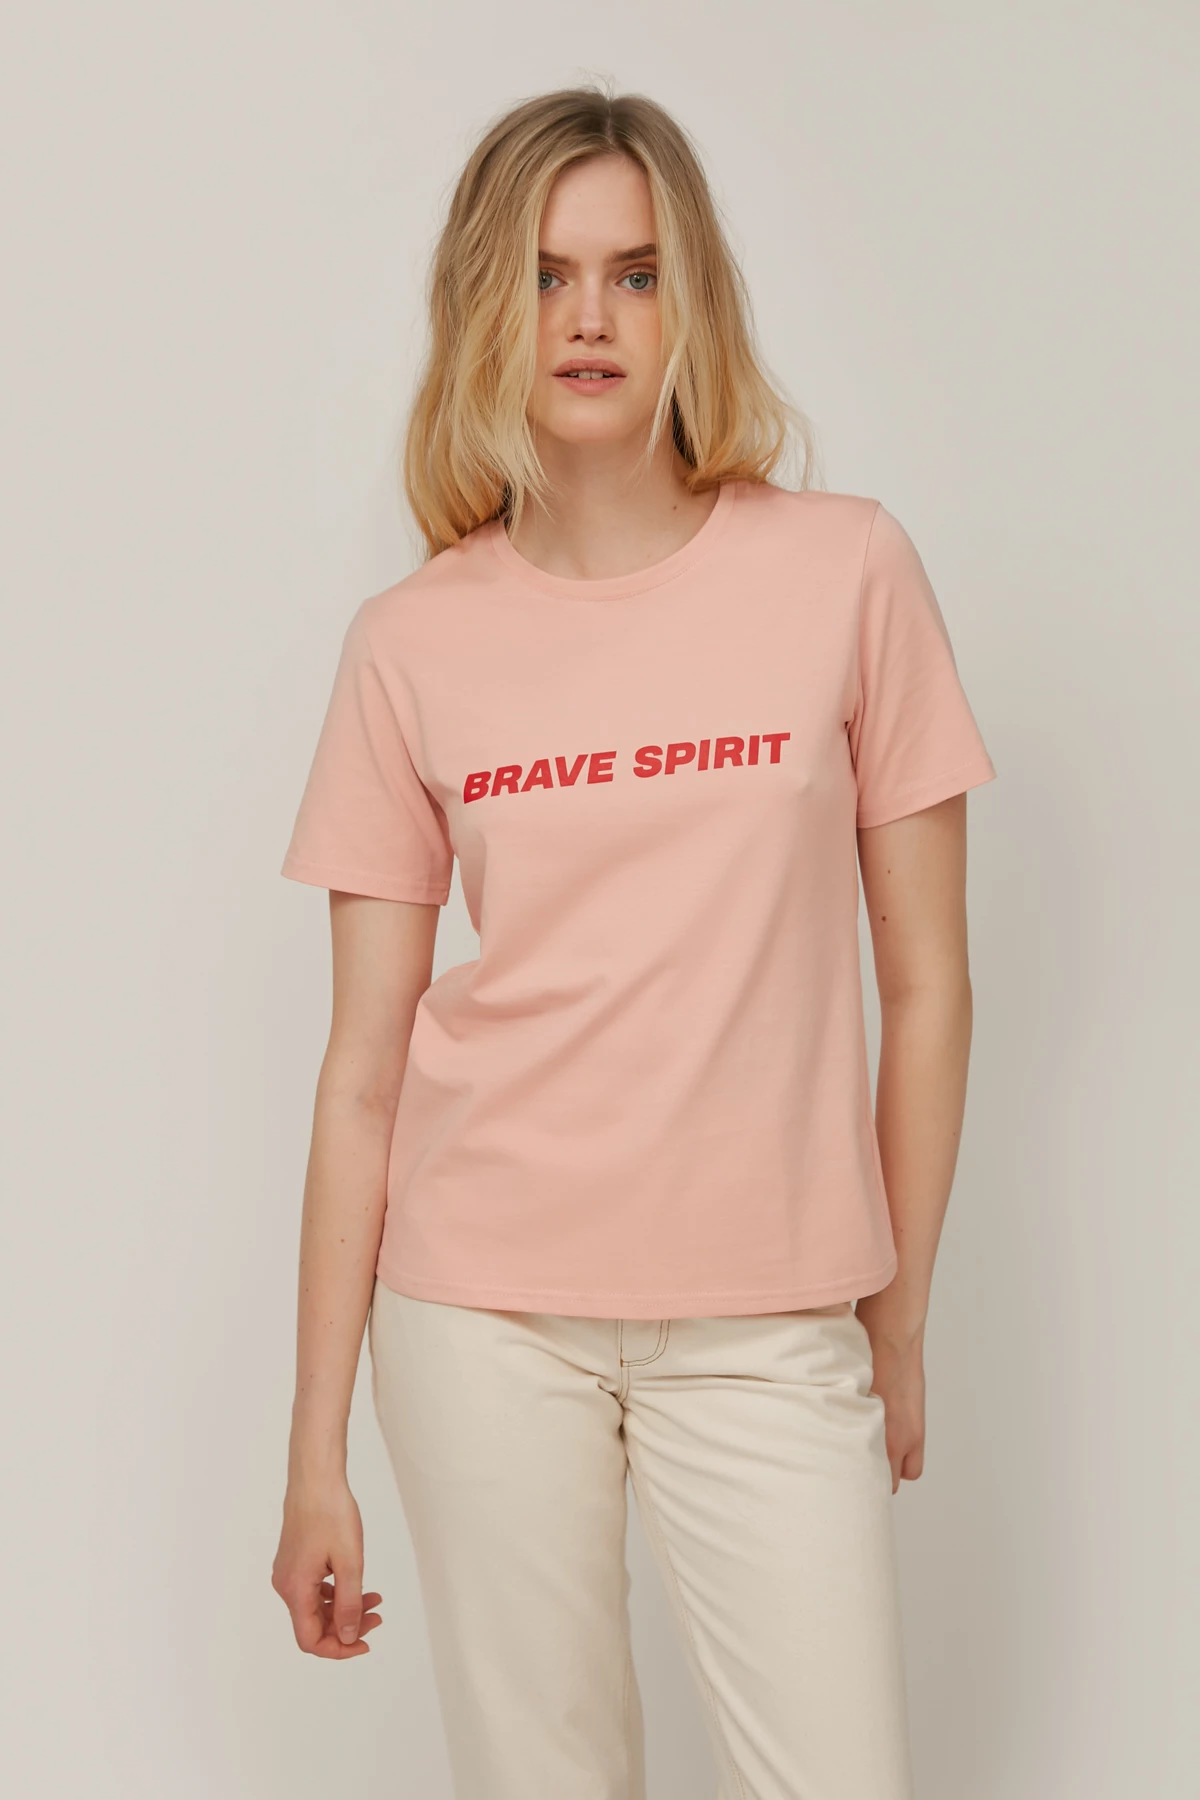 Пудрова трикотажна футболка з написом "Brave Spirit", фото 1